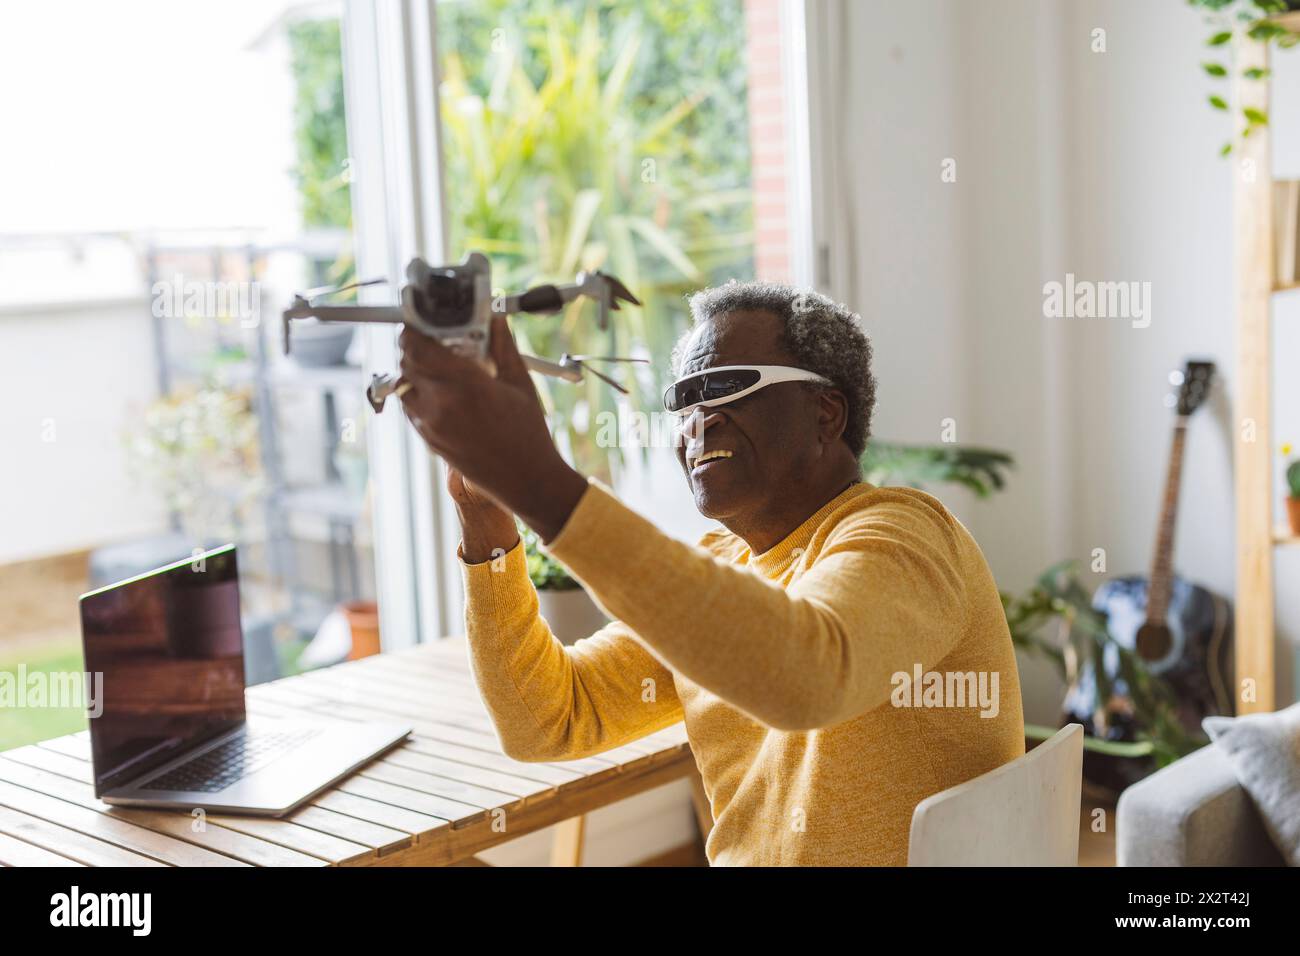 Homme senior portant des lunettes intelligentes apprenant à opérer un drone Banque D'Images